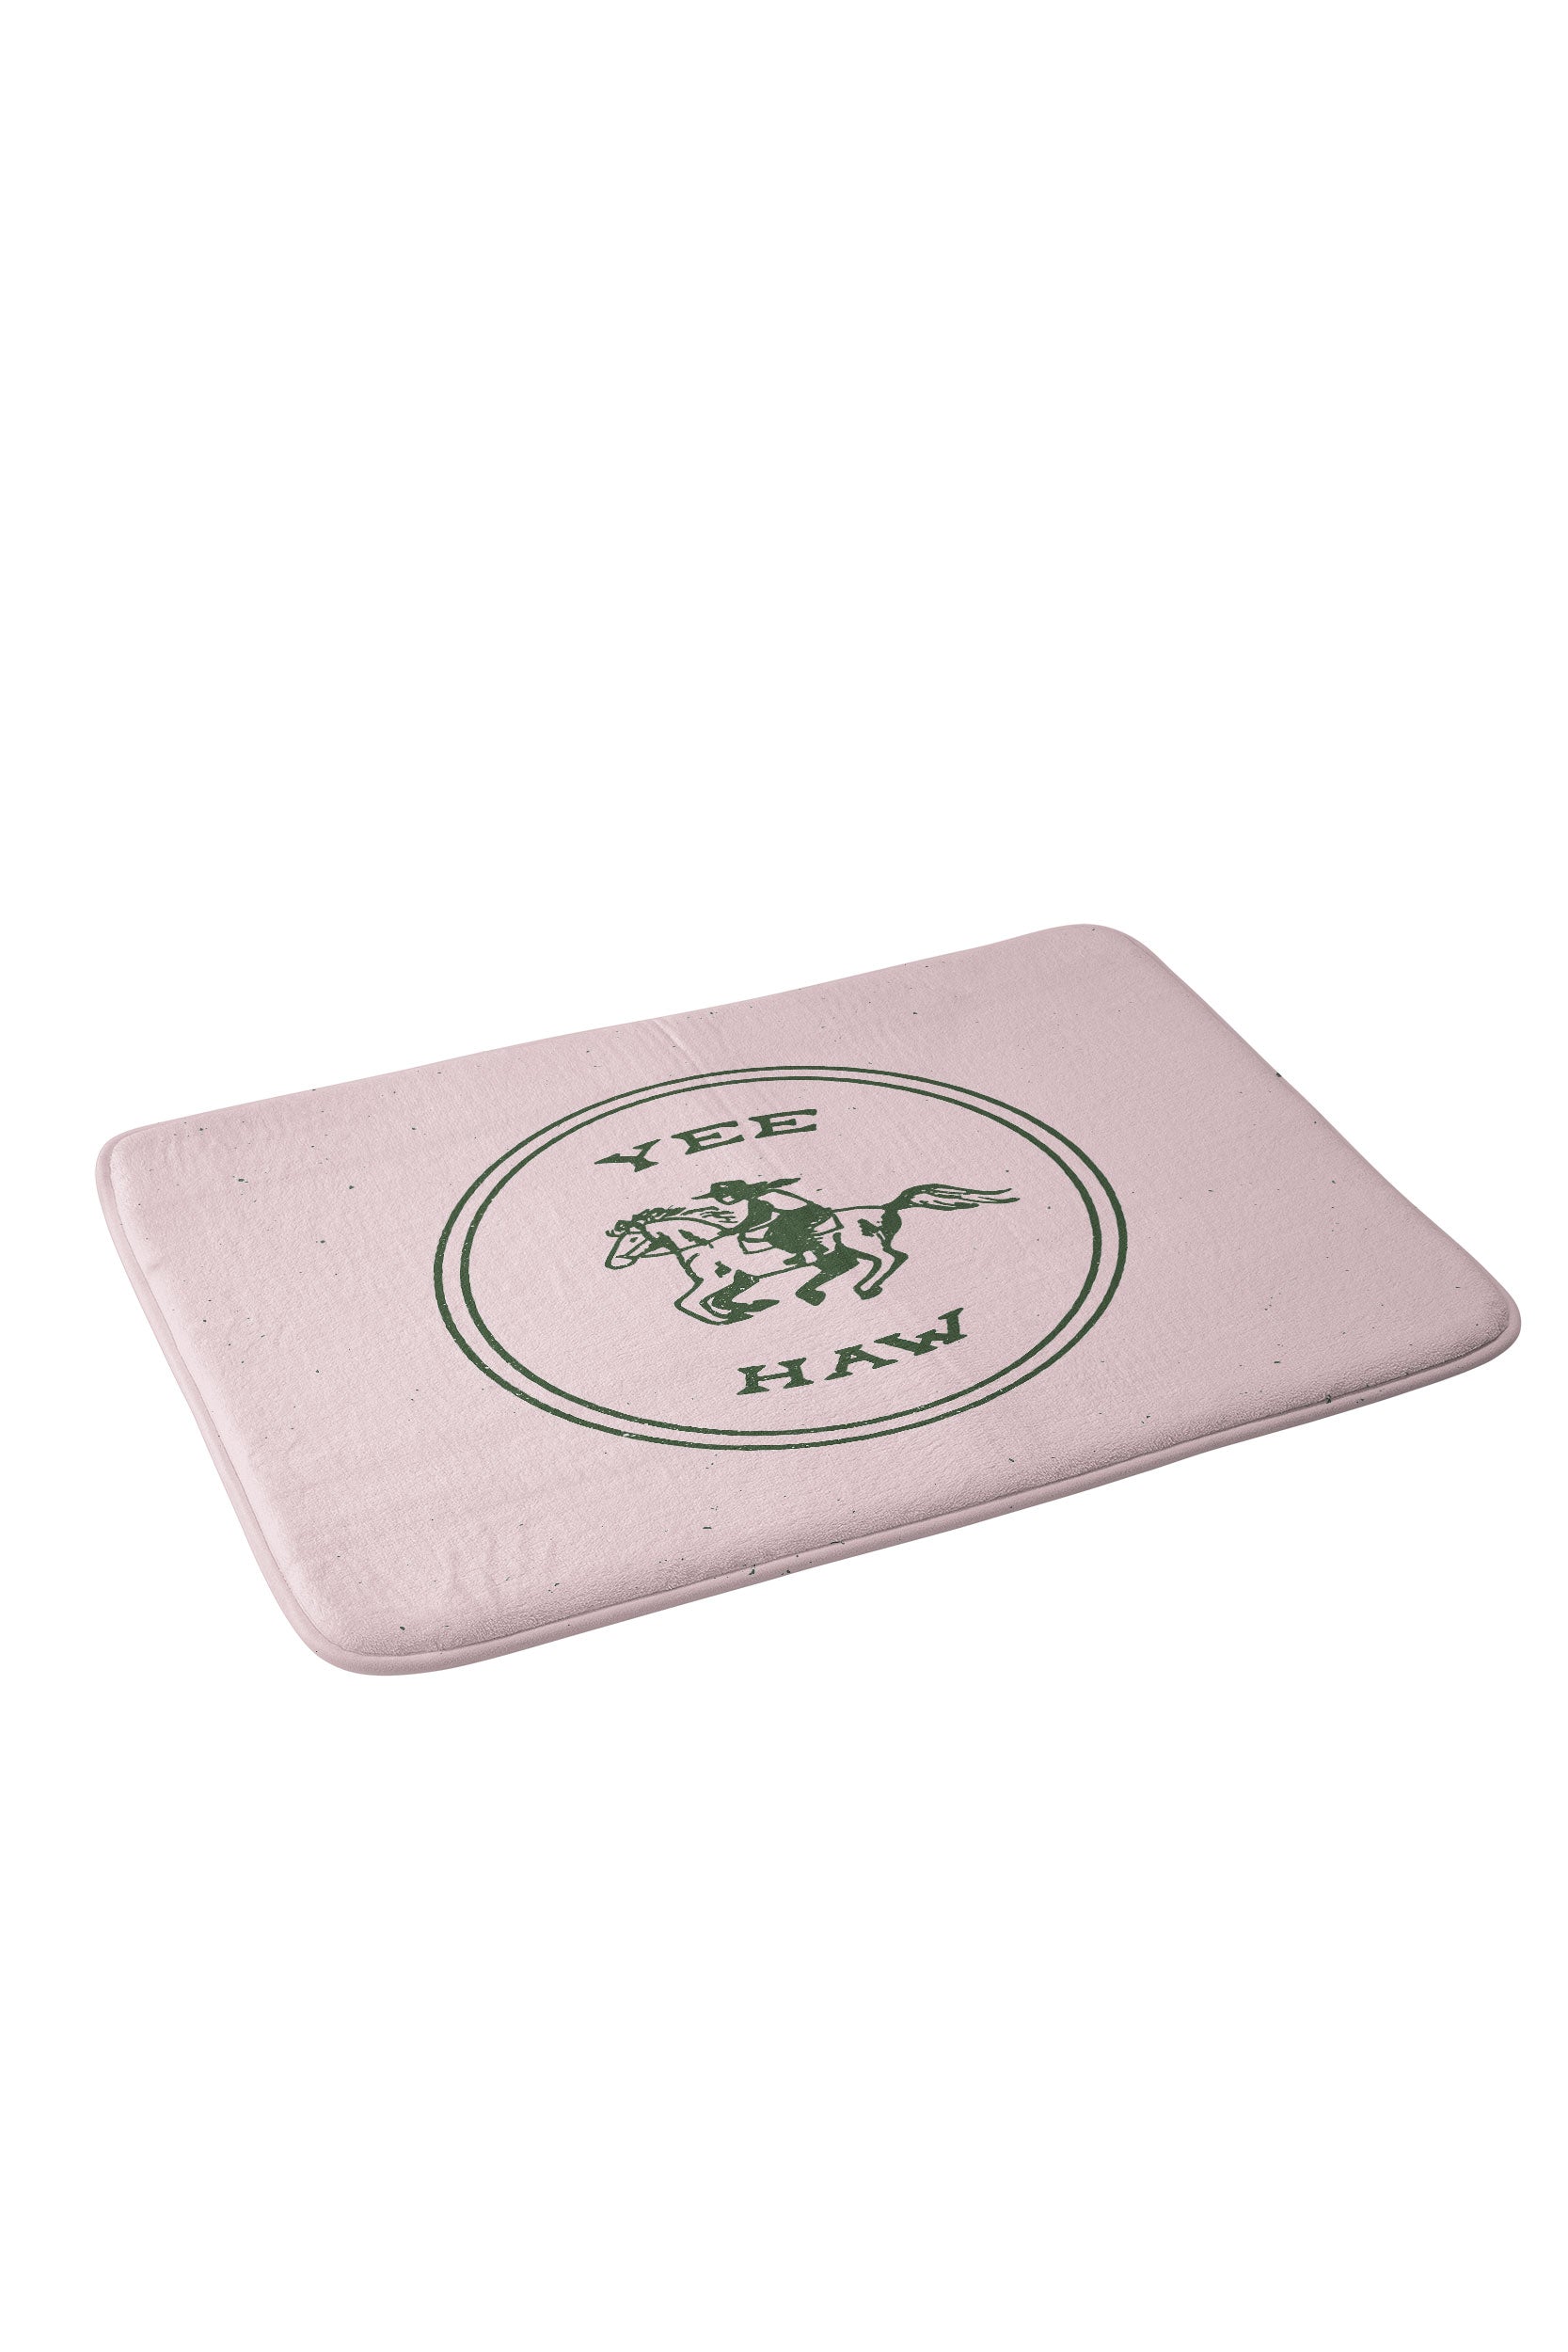 Yee Haw in Pink Foam Bathroom Mat (DS) DD